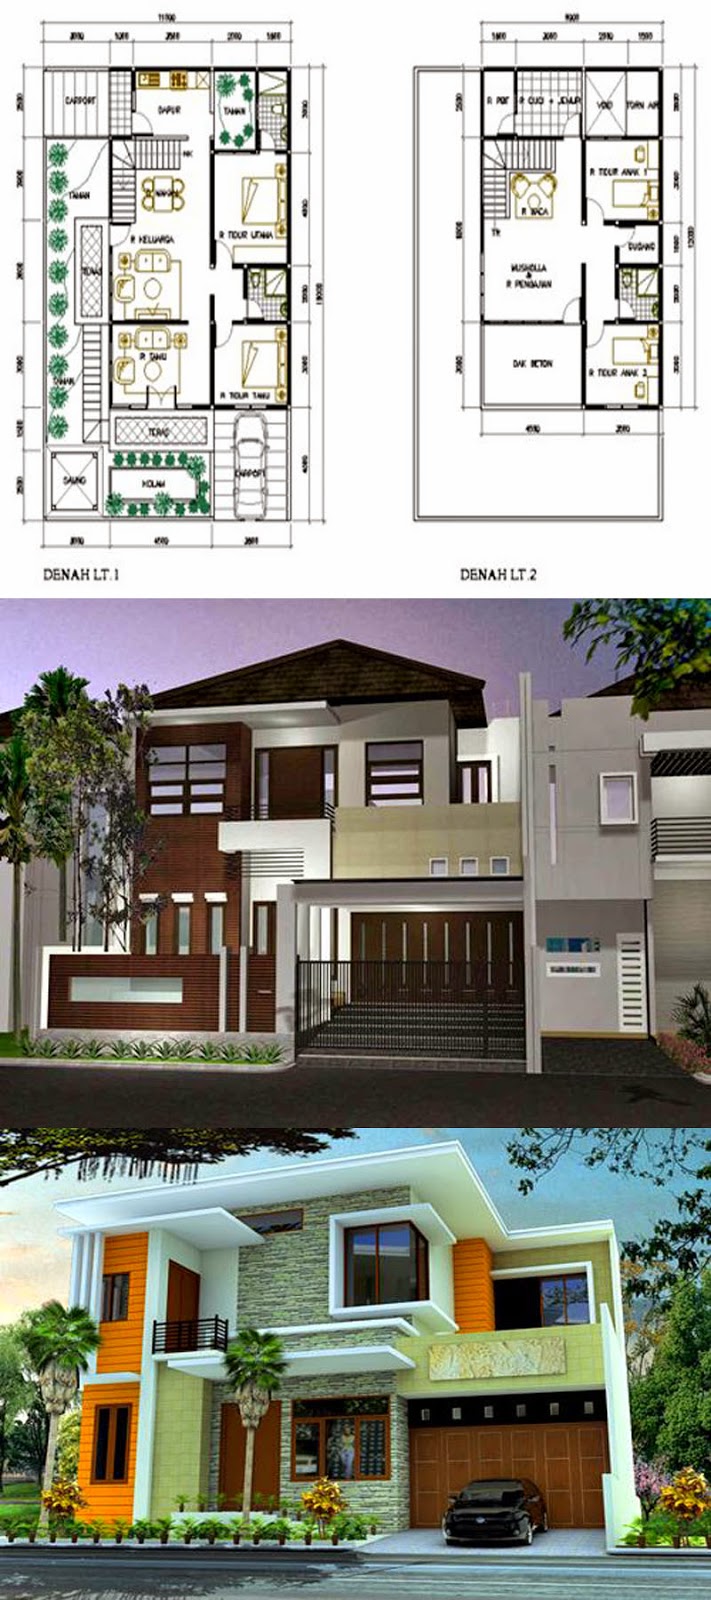 65 Desain Rumah Minimalis 2 Lantai Type 70 Desain Rumah Minimalis Terbaru